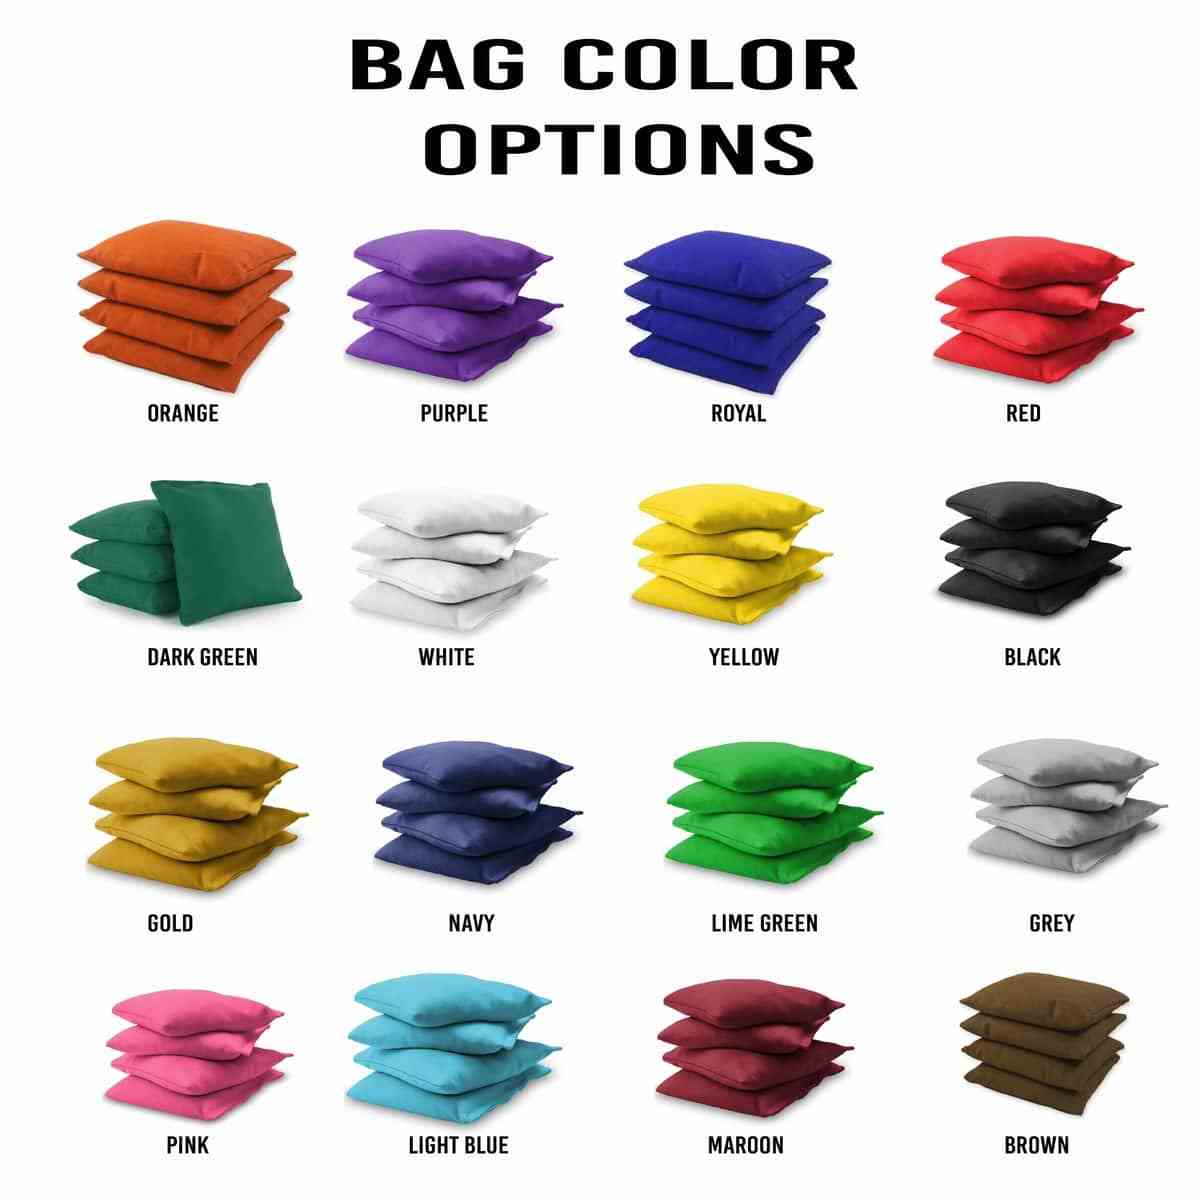 Incog 2x4 bag colors